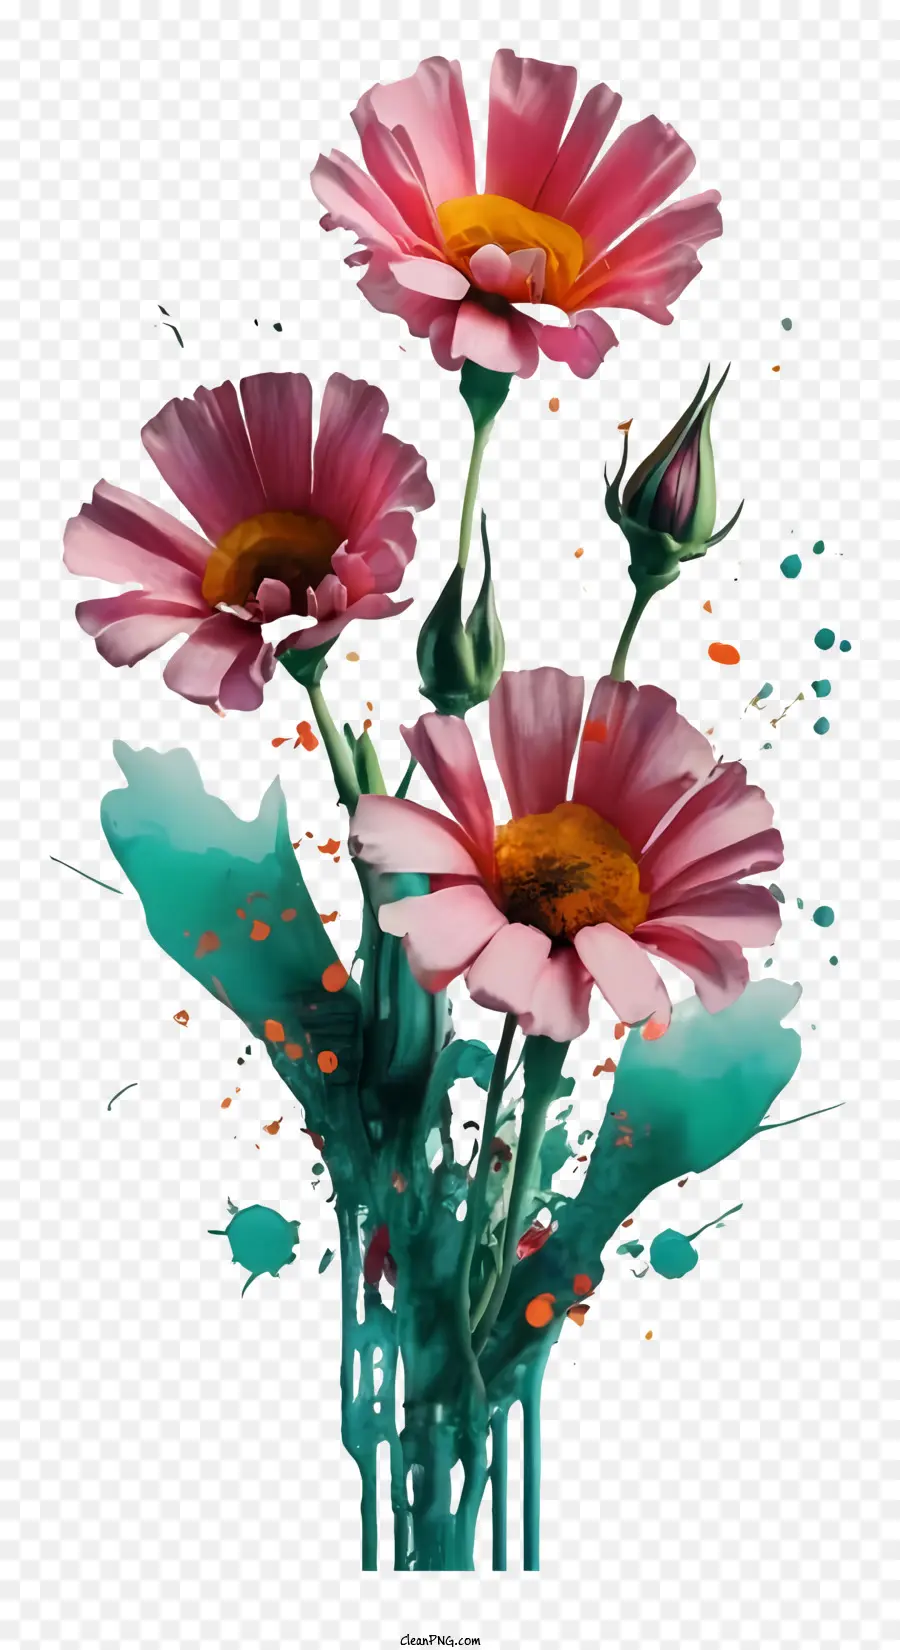 Lack Splatter - Rosa Blumen mit grüner Farbe auf Vase